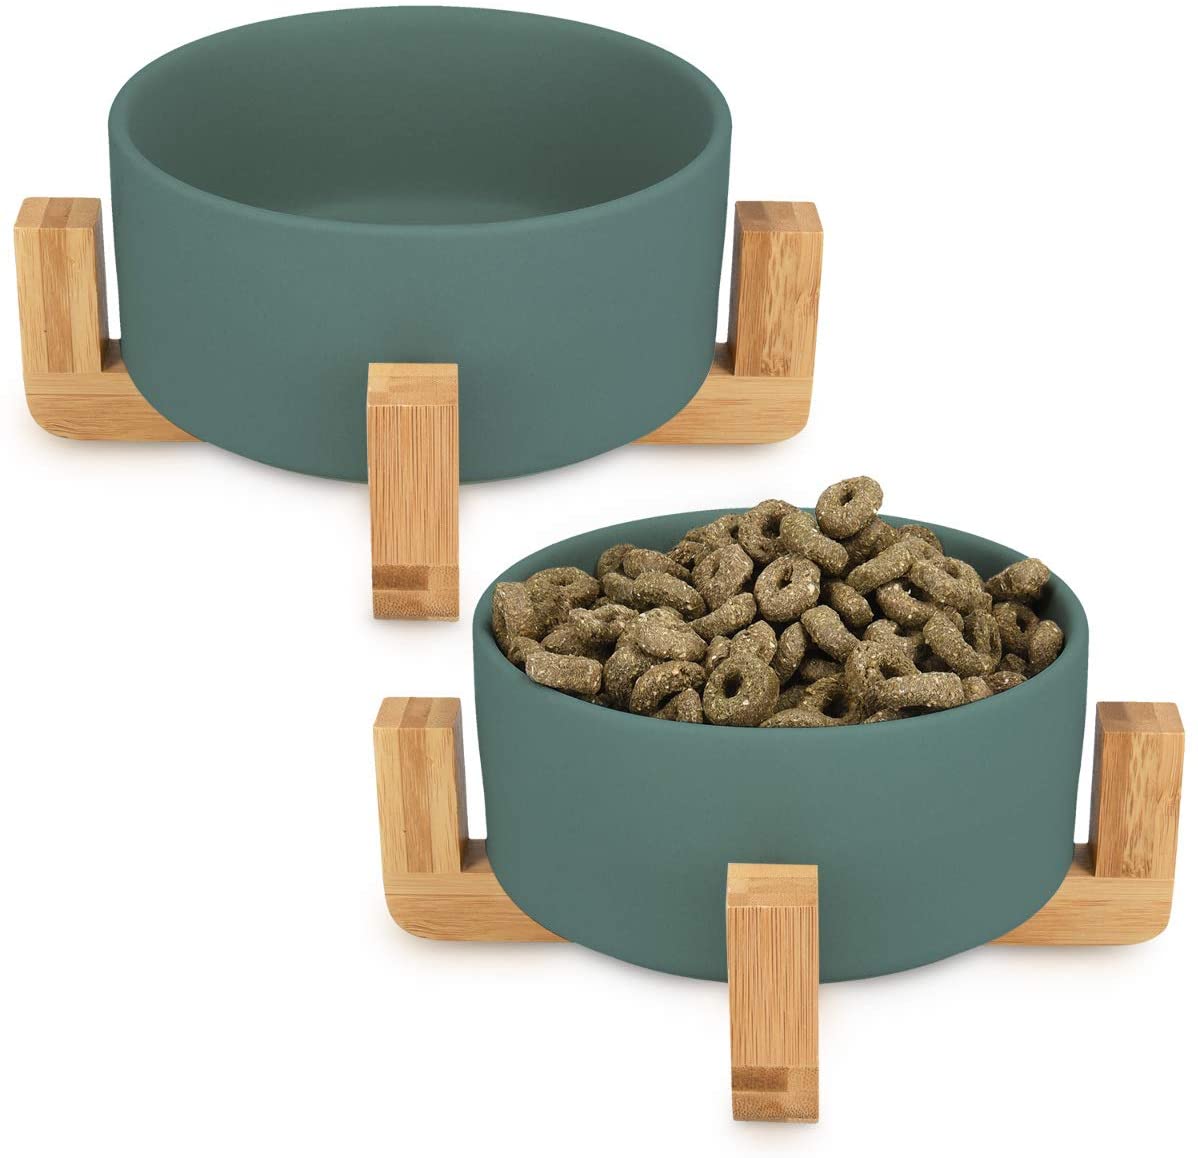  Navaris 2X Cuencos elevados para Mascotas - Comedero y Bebedero de cerámica para Perros Gatos Cachorros - con Soportes de bambú Antideslizante - en Verde 